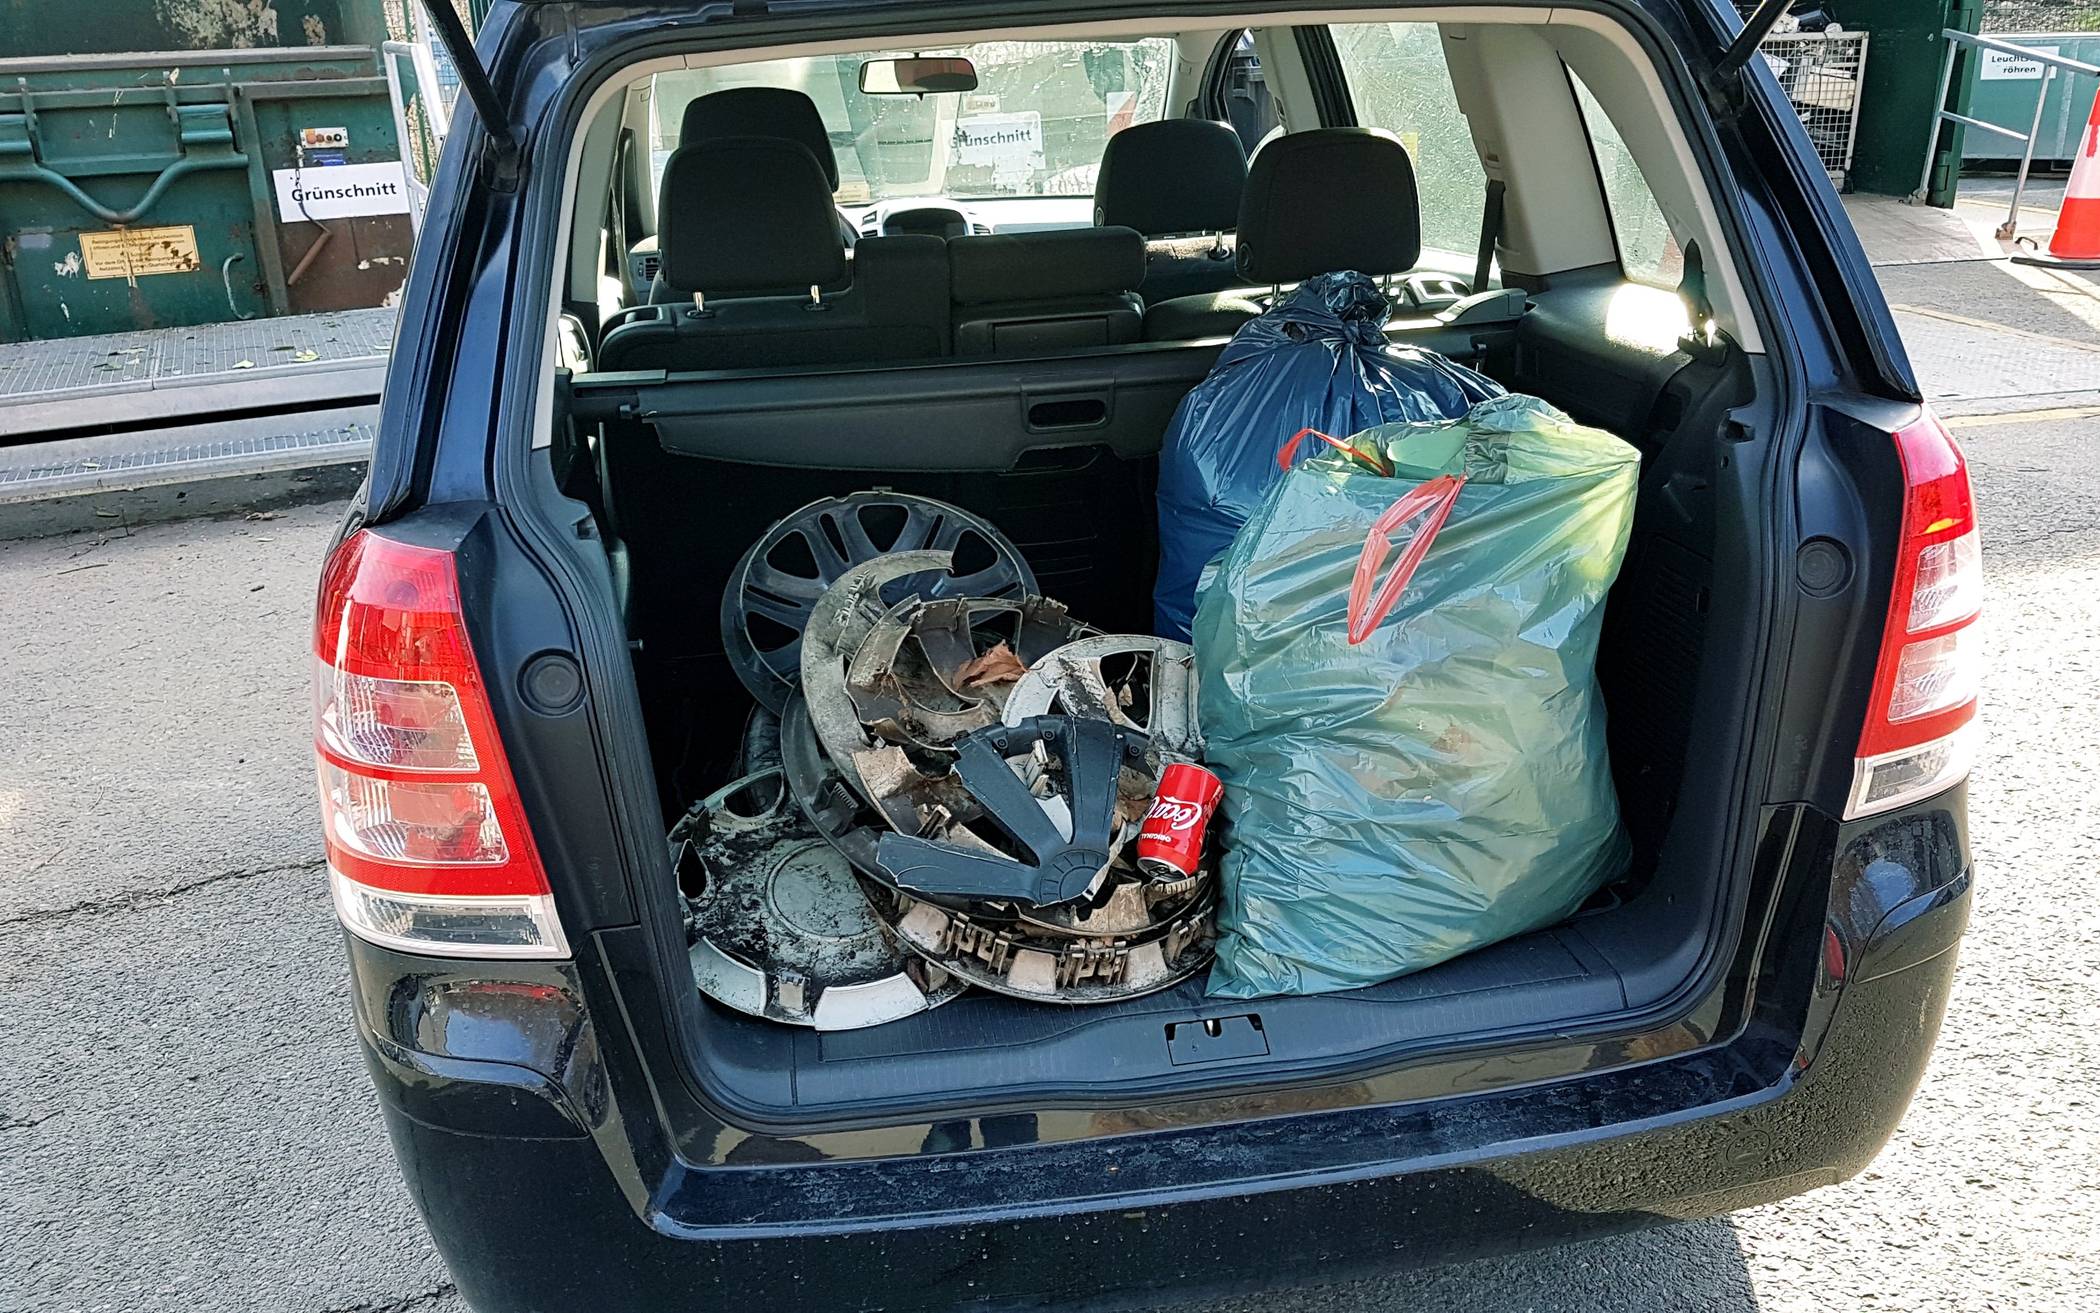  Einen ganzen Kofferraum voll Müll sammelte Marcus Buttermann auf seiner Rennrad-Strecke an der Stadtgrenze zu Remscheid. 